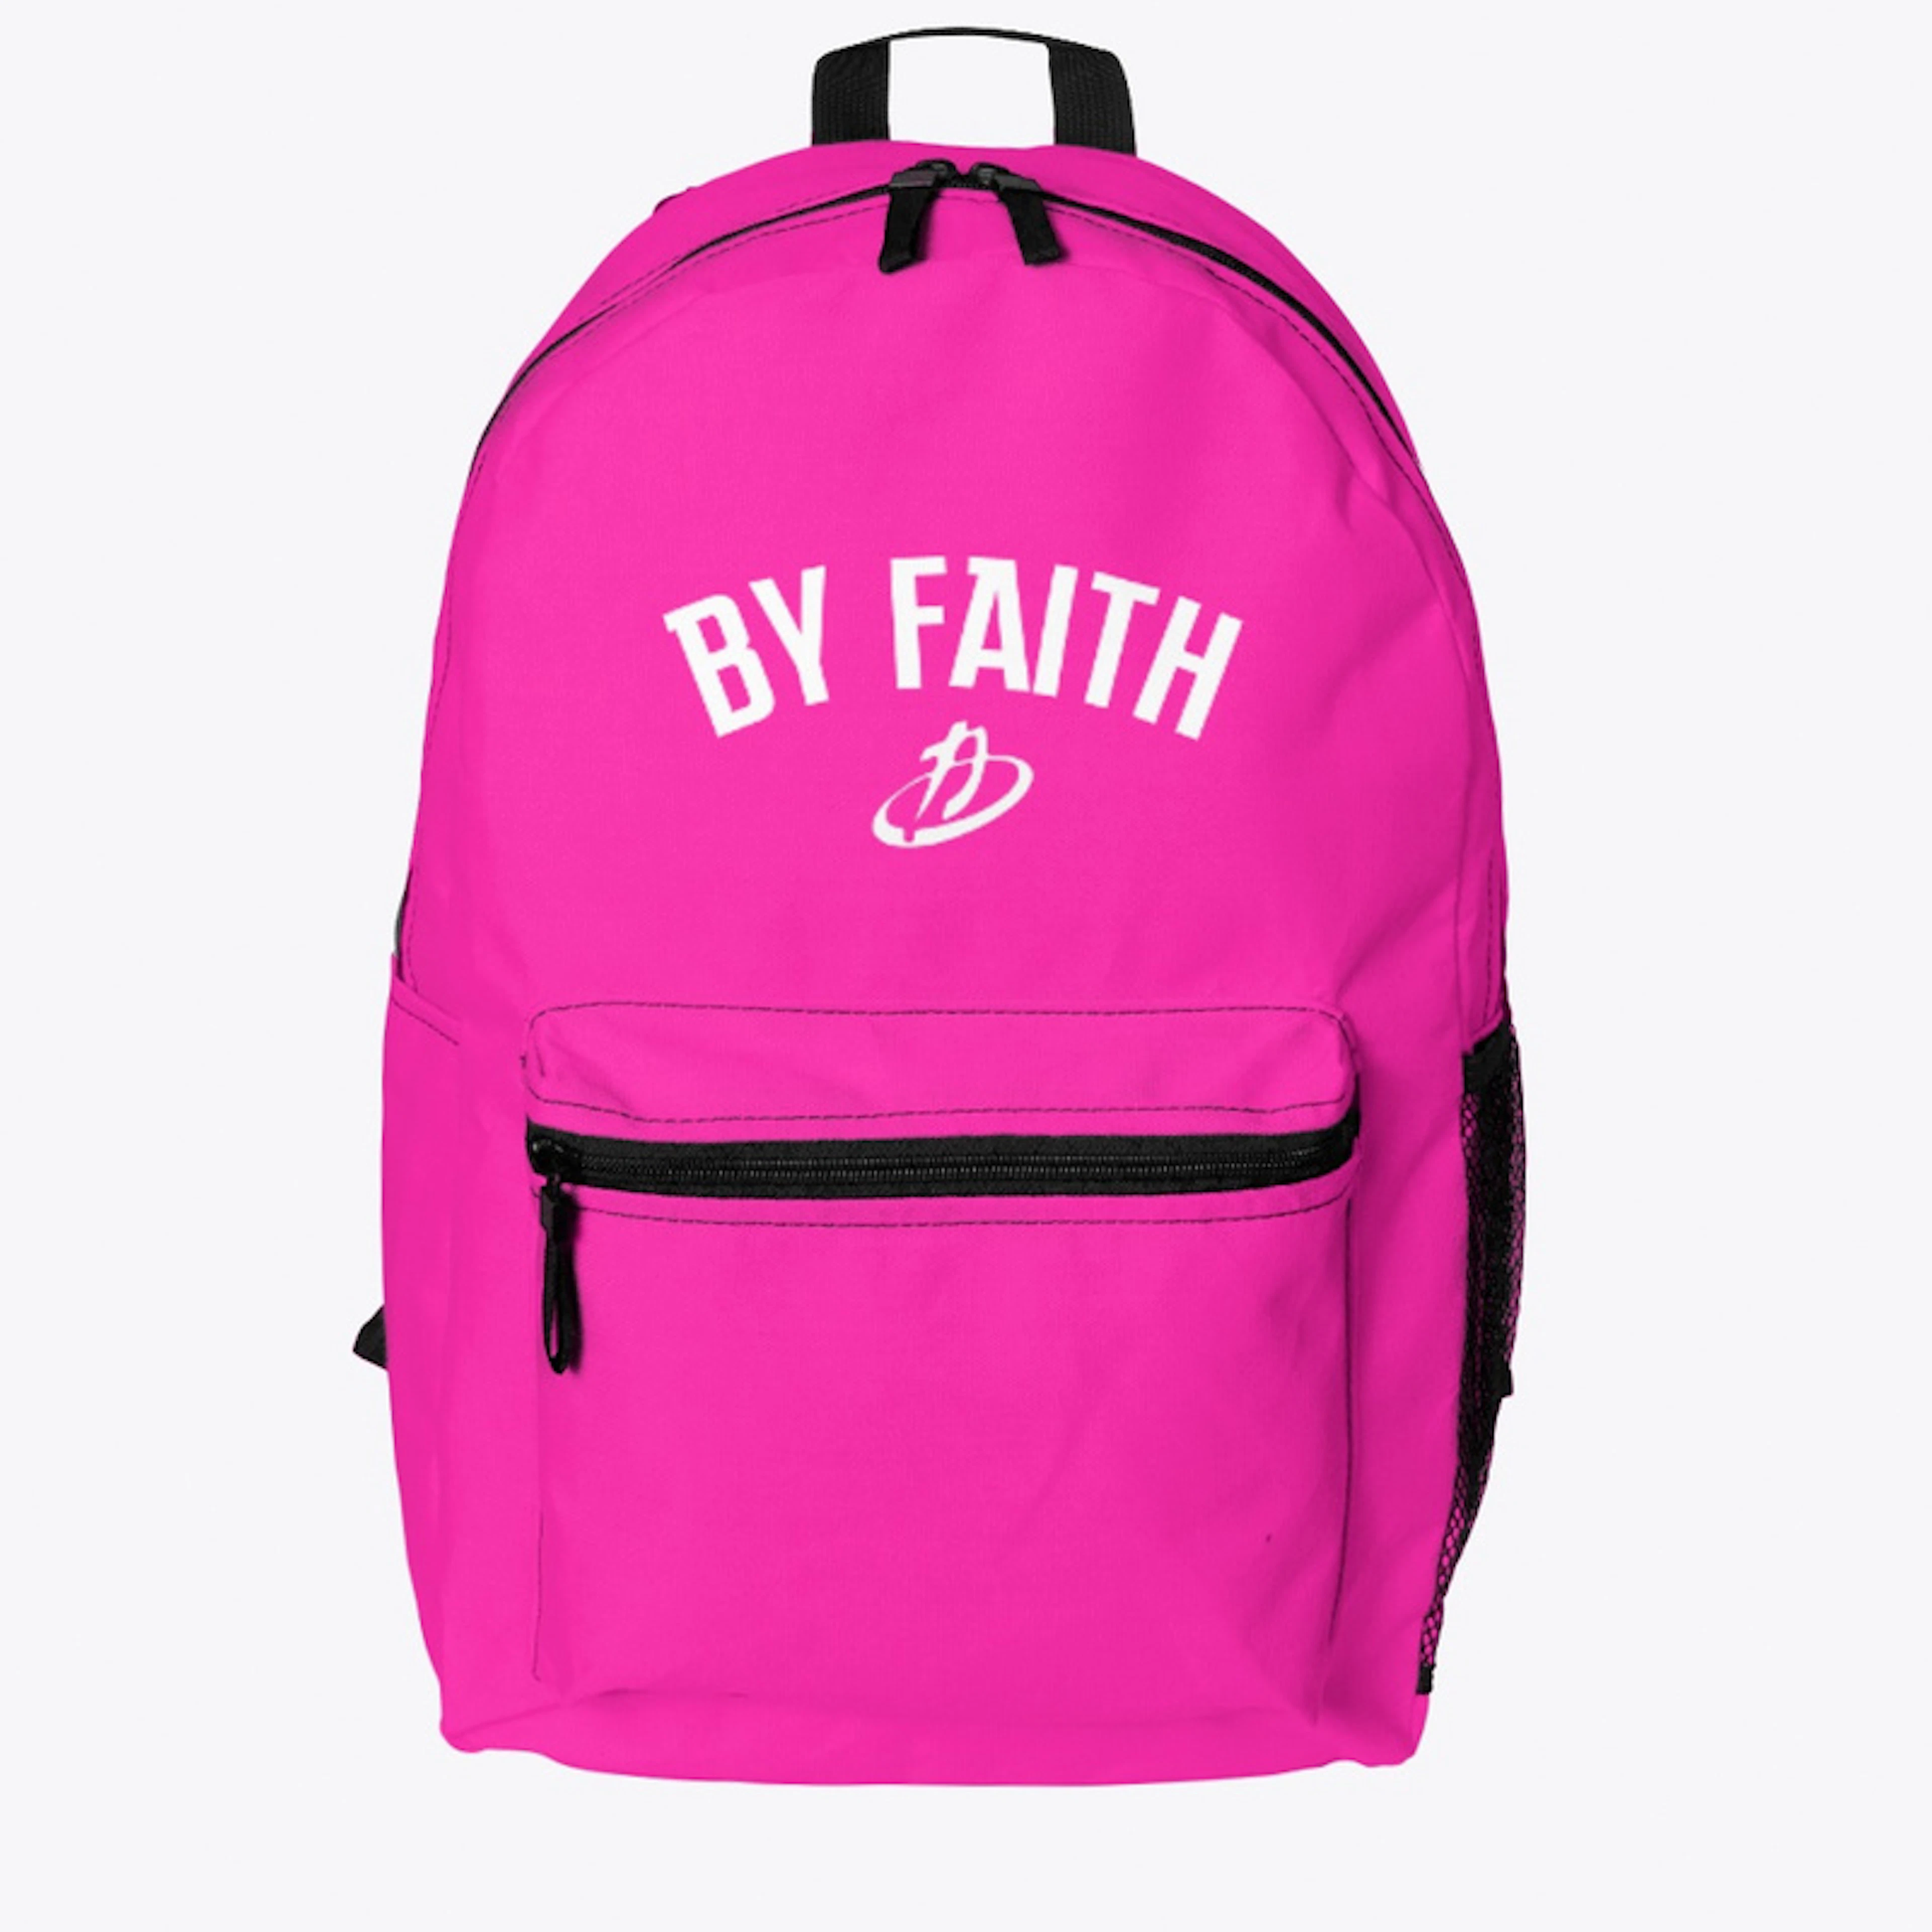 By Faith Backpack